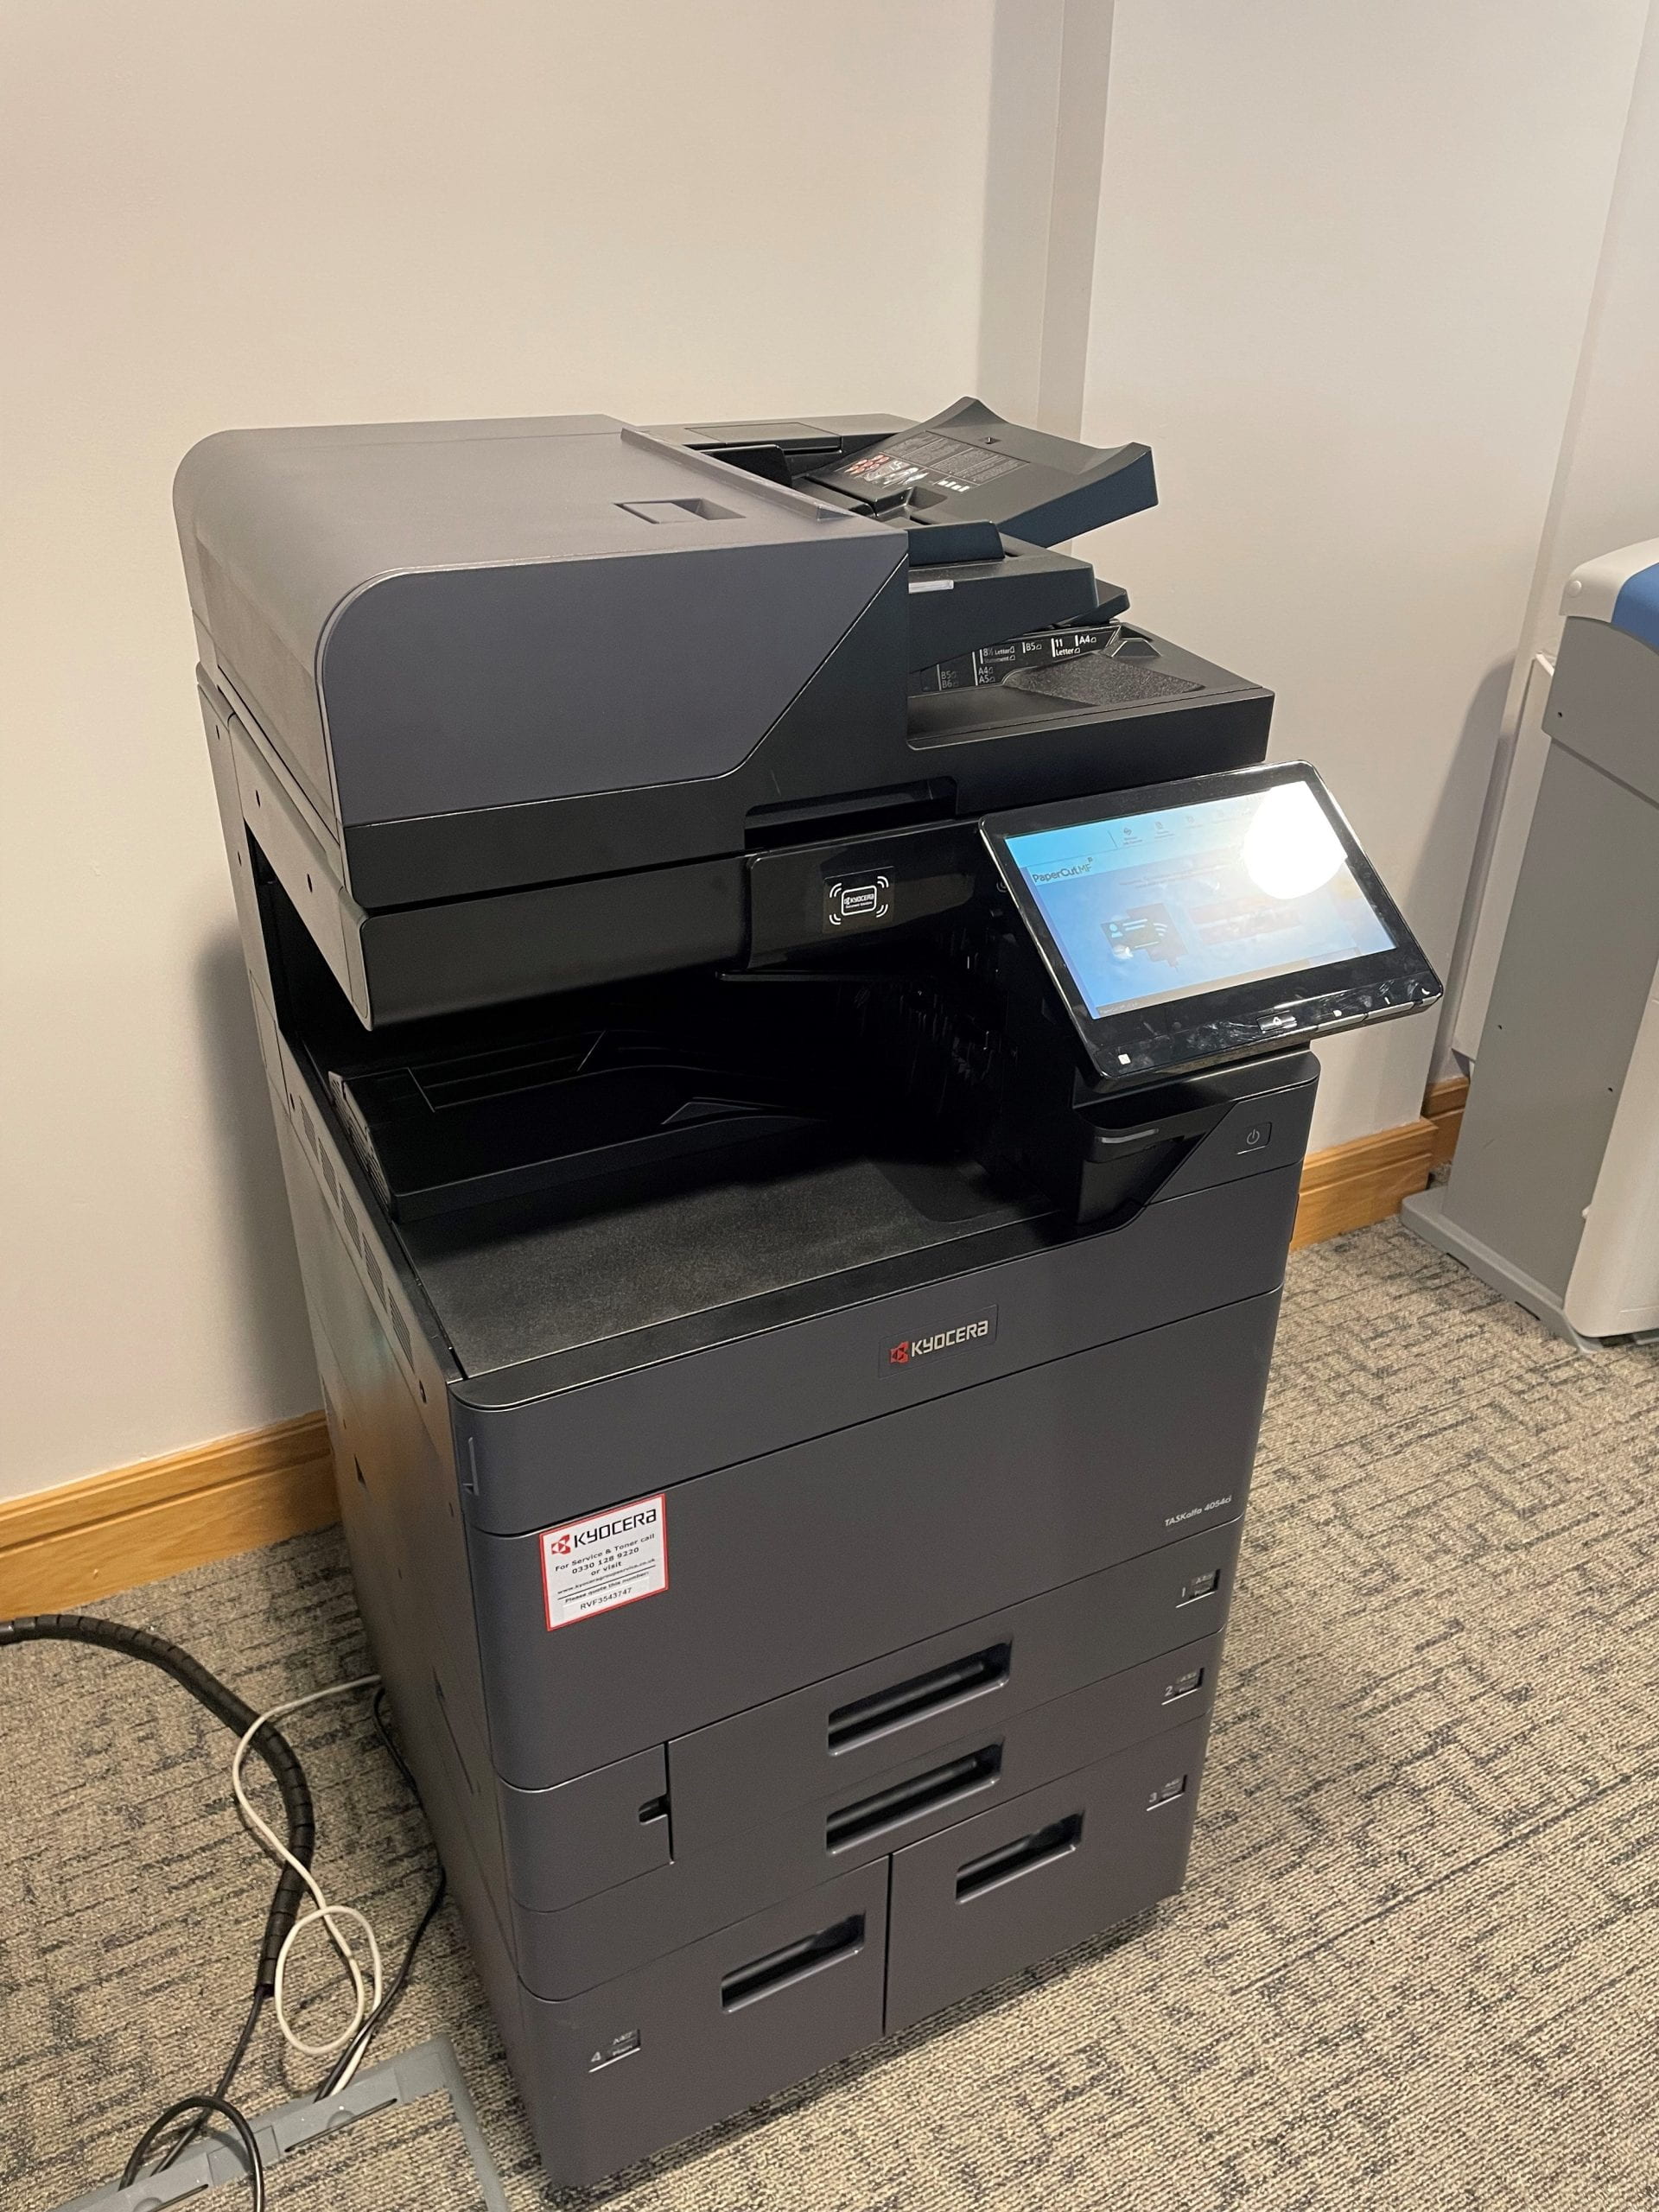 A photo of a new Kyocera Printer at Lawress Hall.